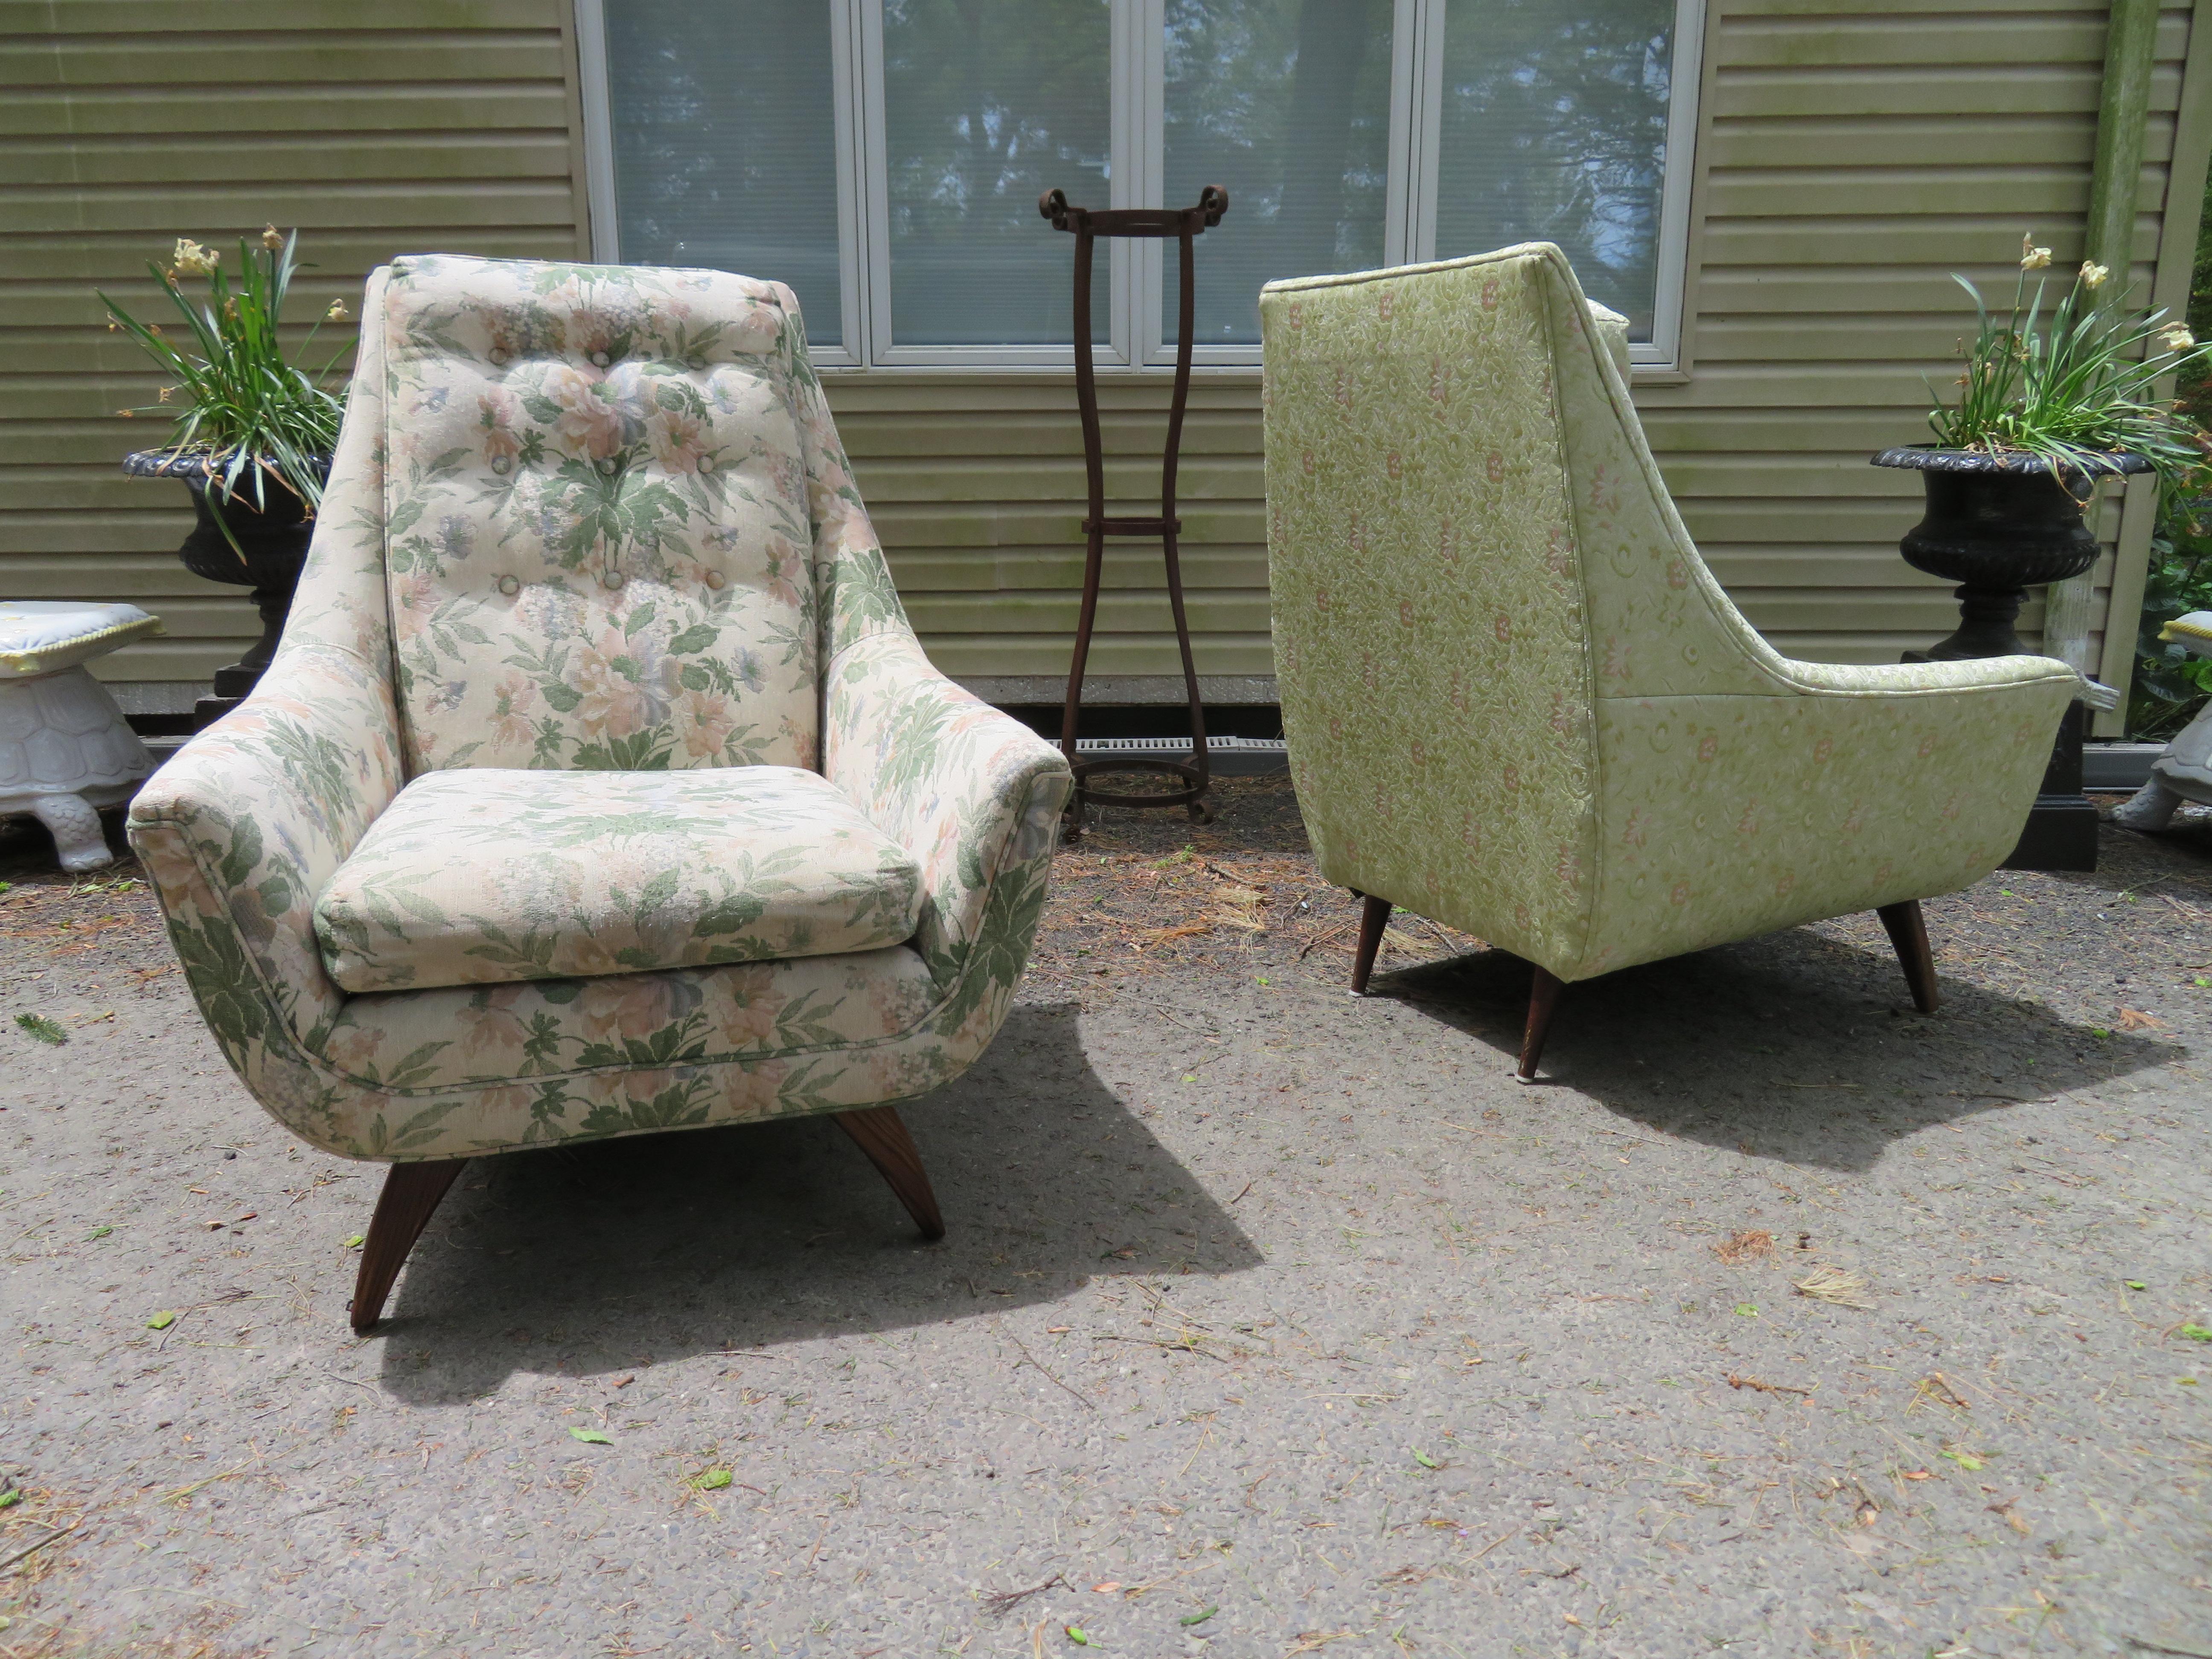 Belle paire de chaises longues à dossier haut de style Adrian Pearsall. Ces chaises sont fabriquées par la Bassett Furniture Company et étaient généralement vendues en ensembles appelés His + Hers sets, une chaise étant plus haute que l'autre. Il